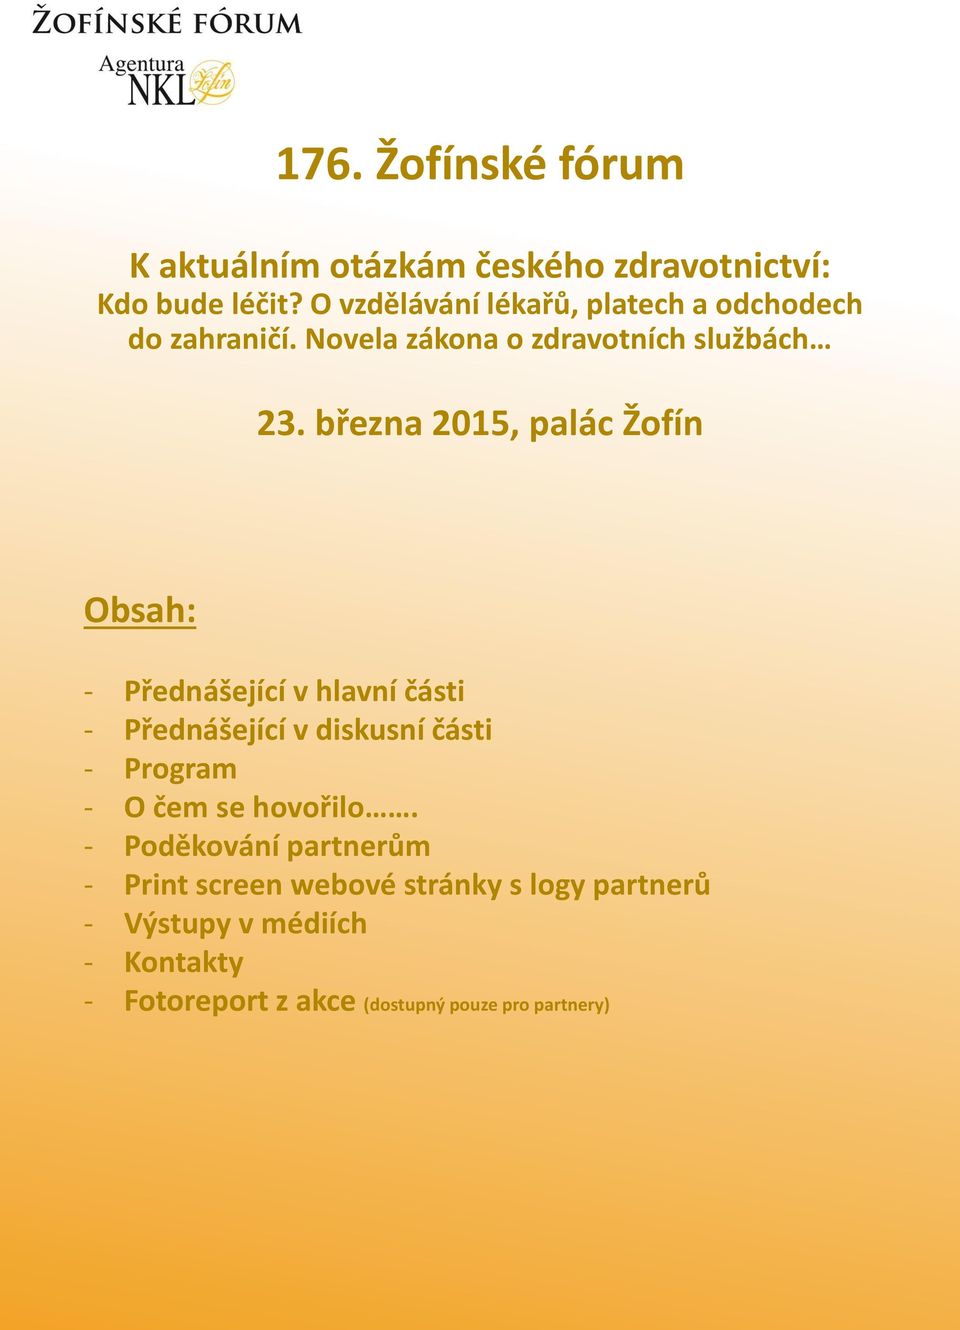 března 2015, palác Žofín Obsah: - Přednášející v hlavní části - Přednášející v diskusní části - Program - O čem